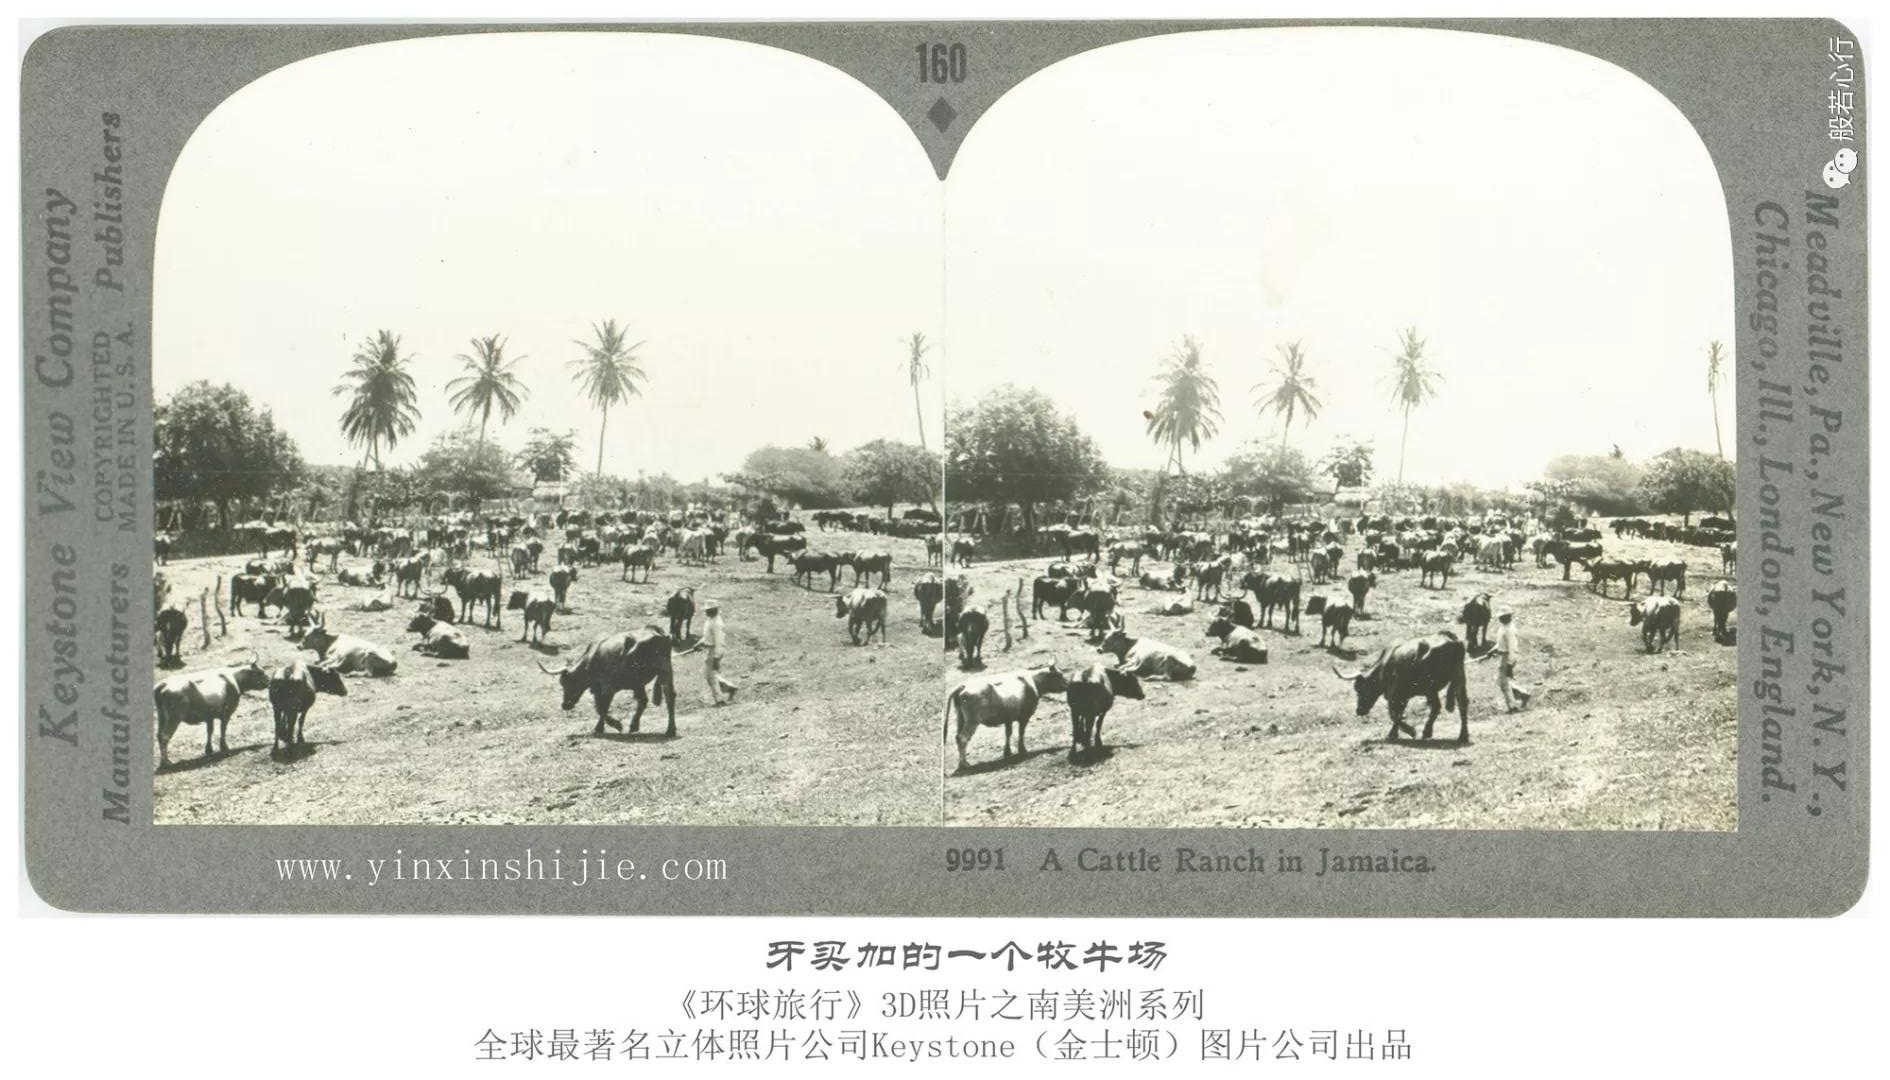 牙买加的一个牧牛场-1936年3D版《环球旅行》立体照片